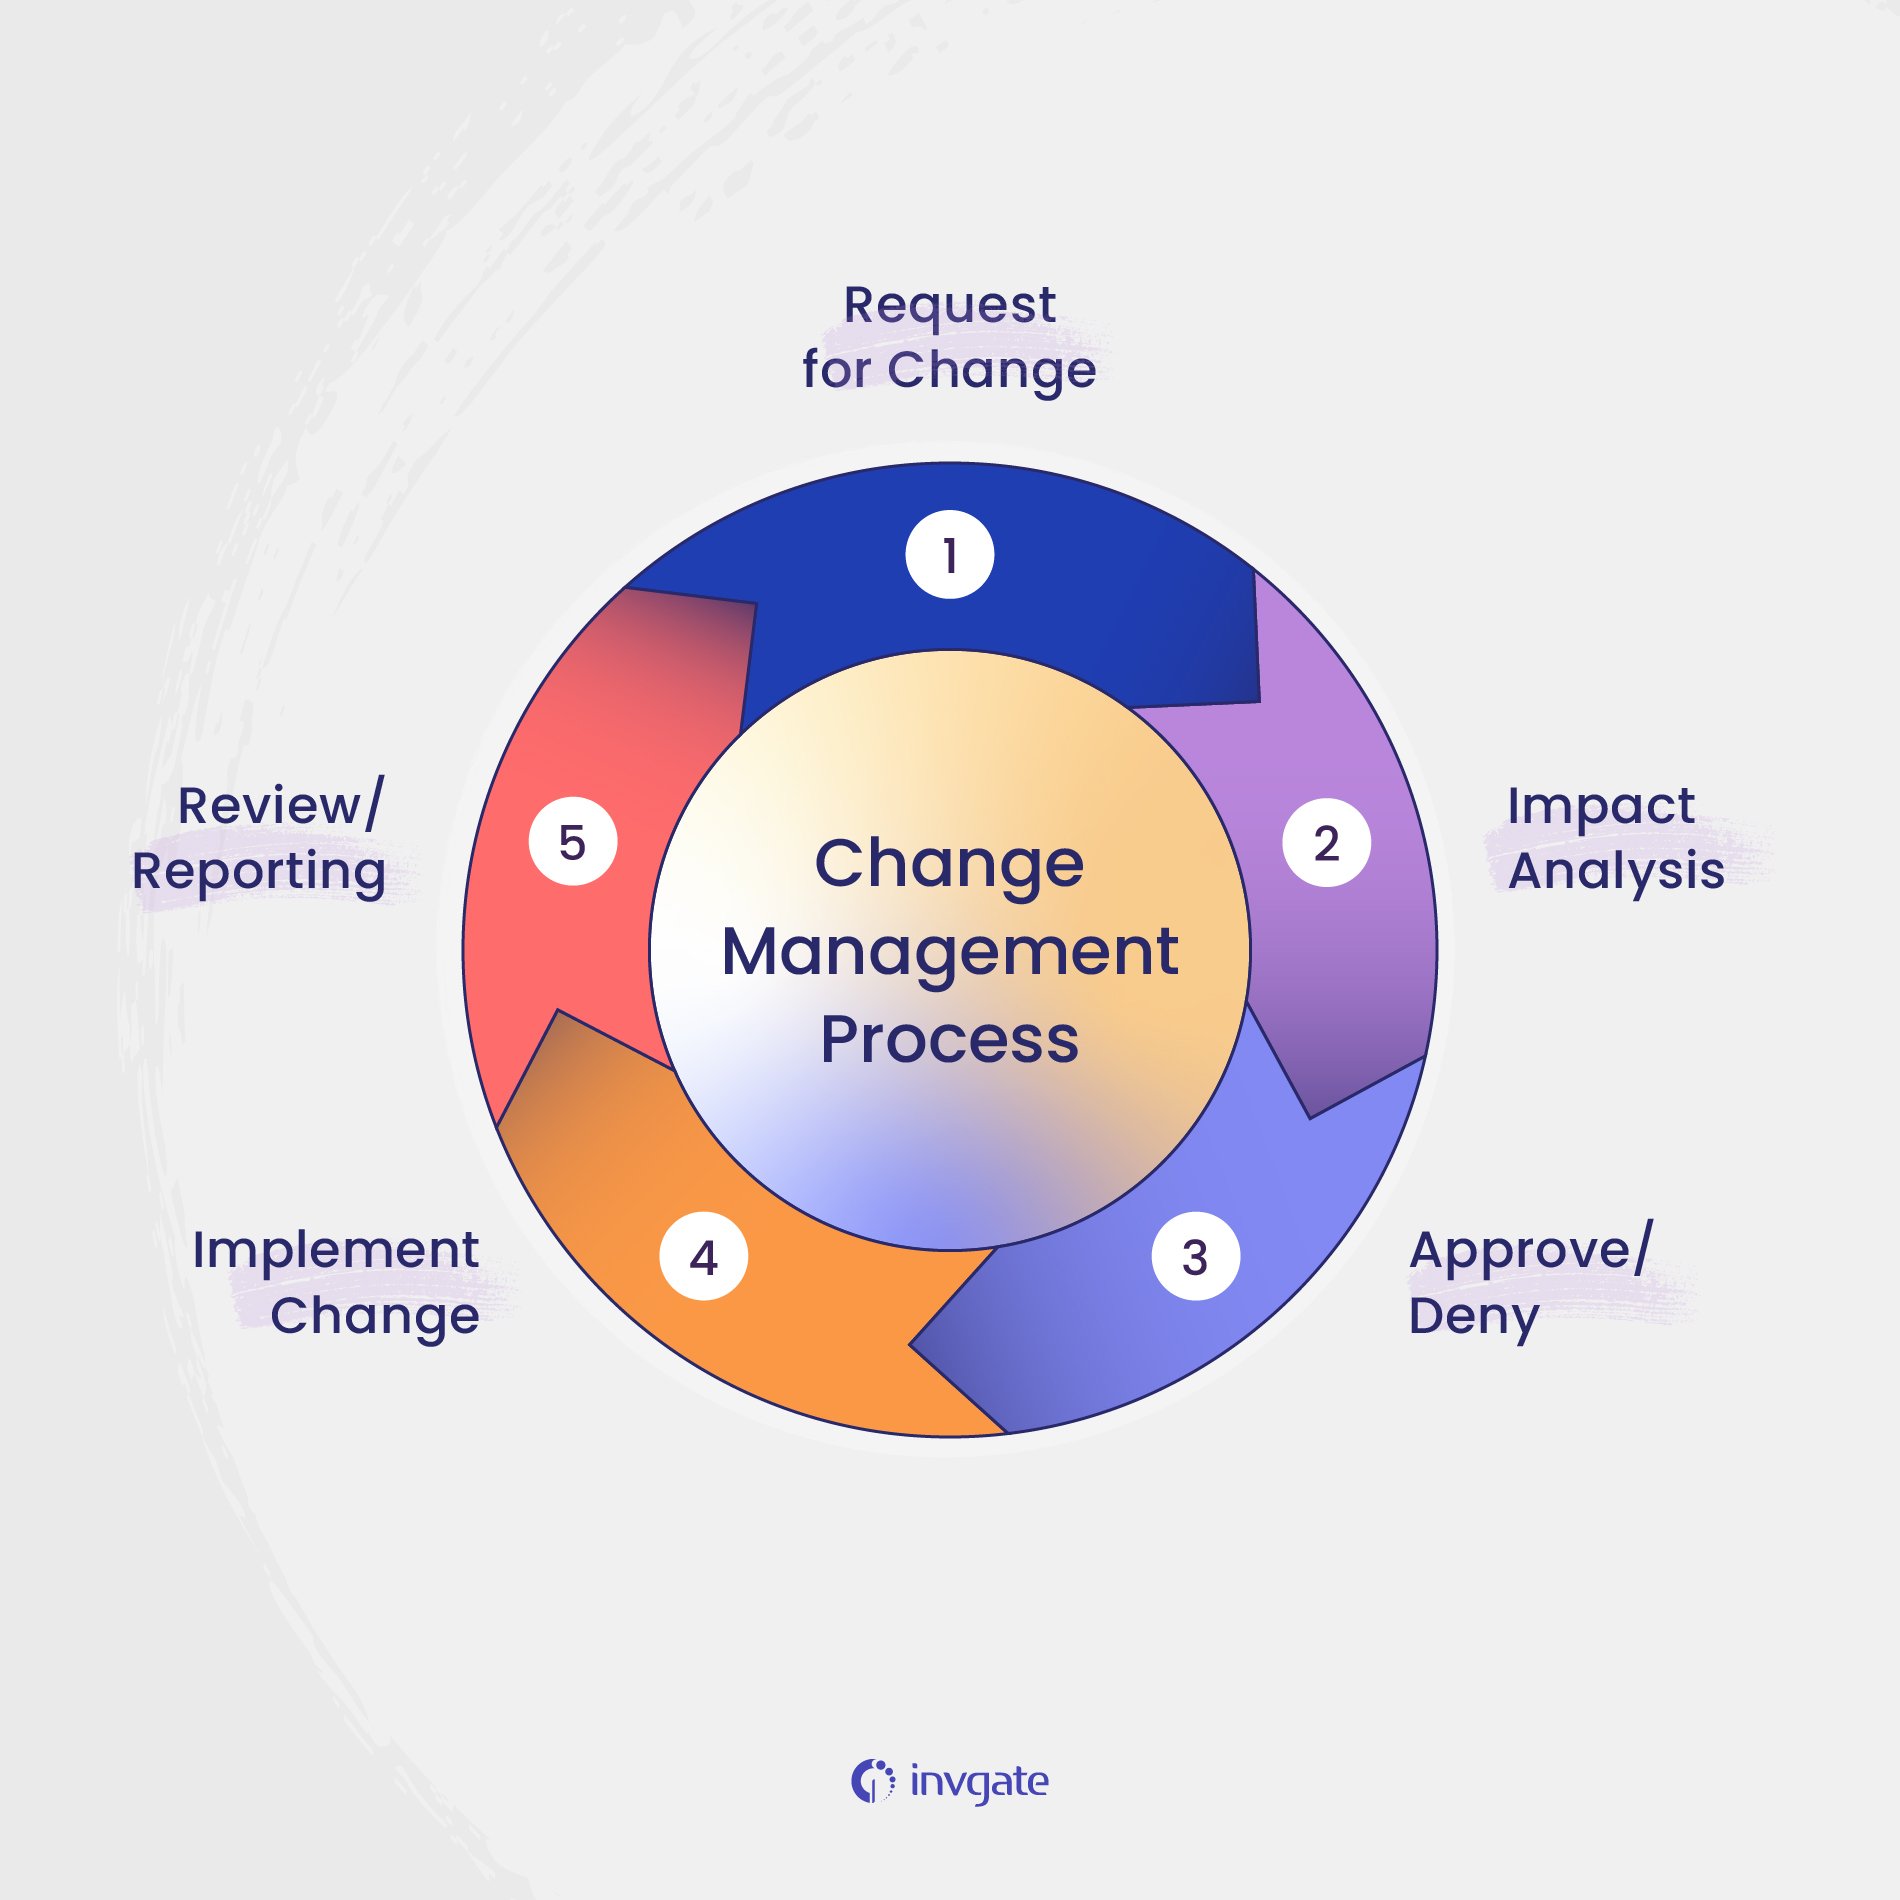 change management process